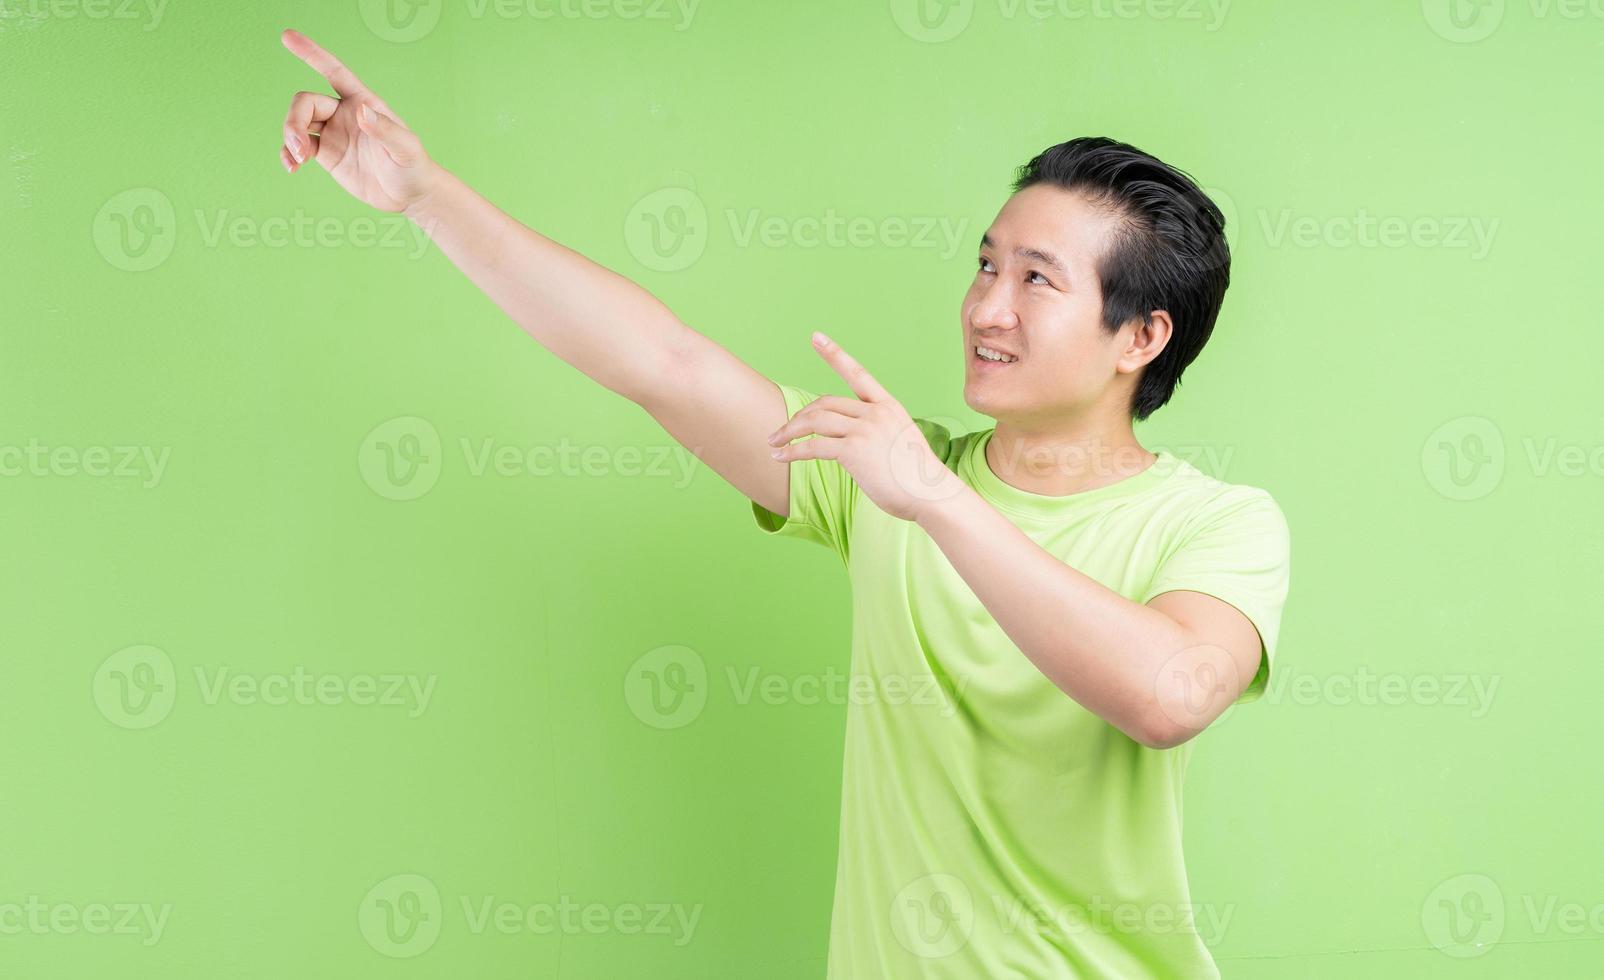 portret van een aziatische man in een groen t-shirt die zich voordeed op een groene achtergrond foto